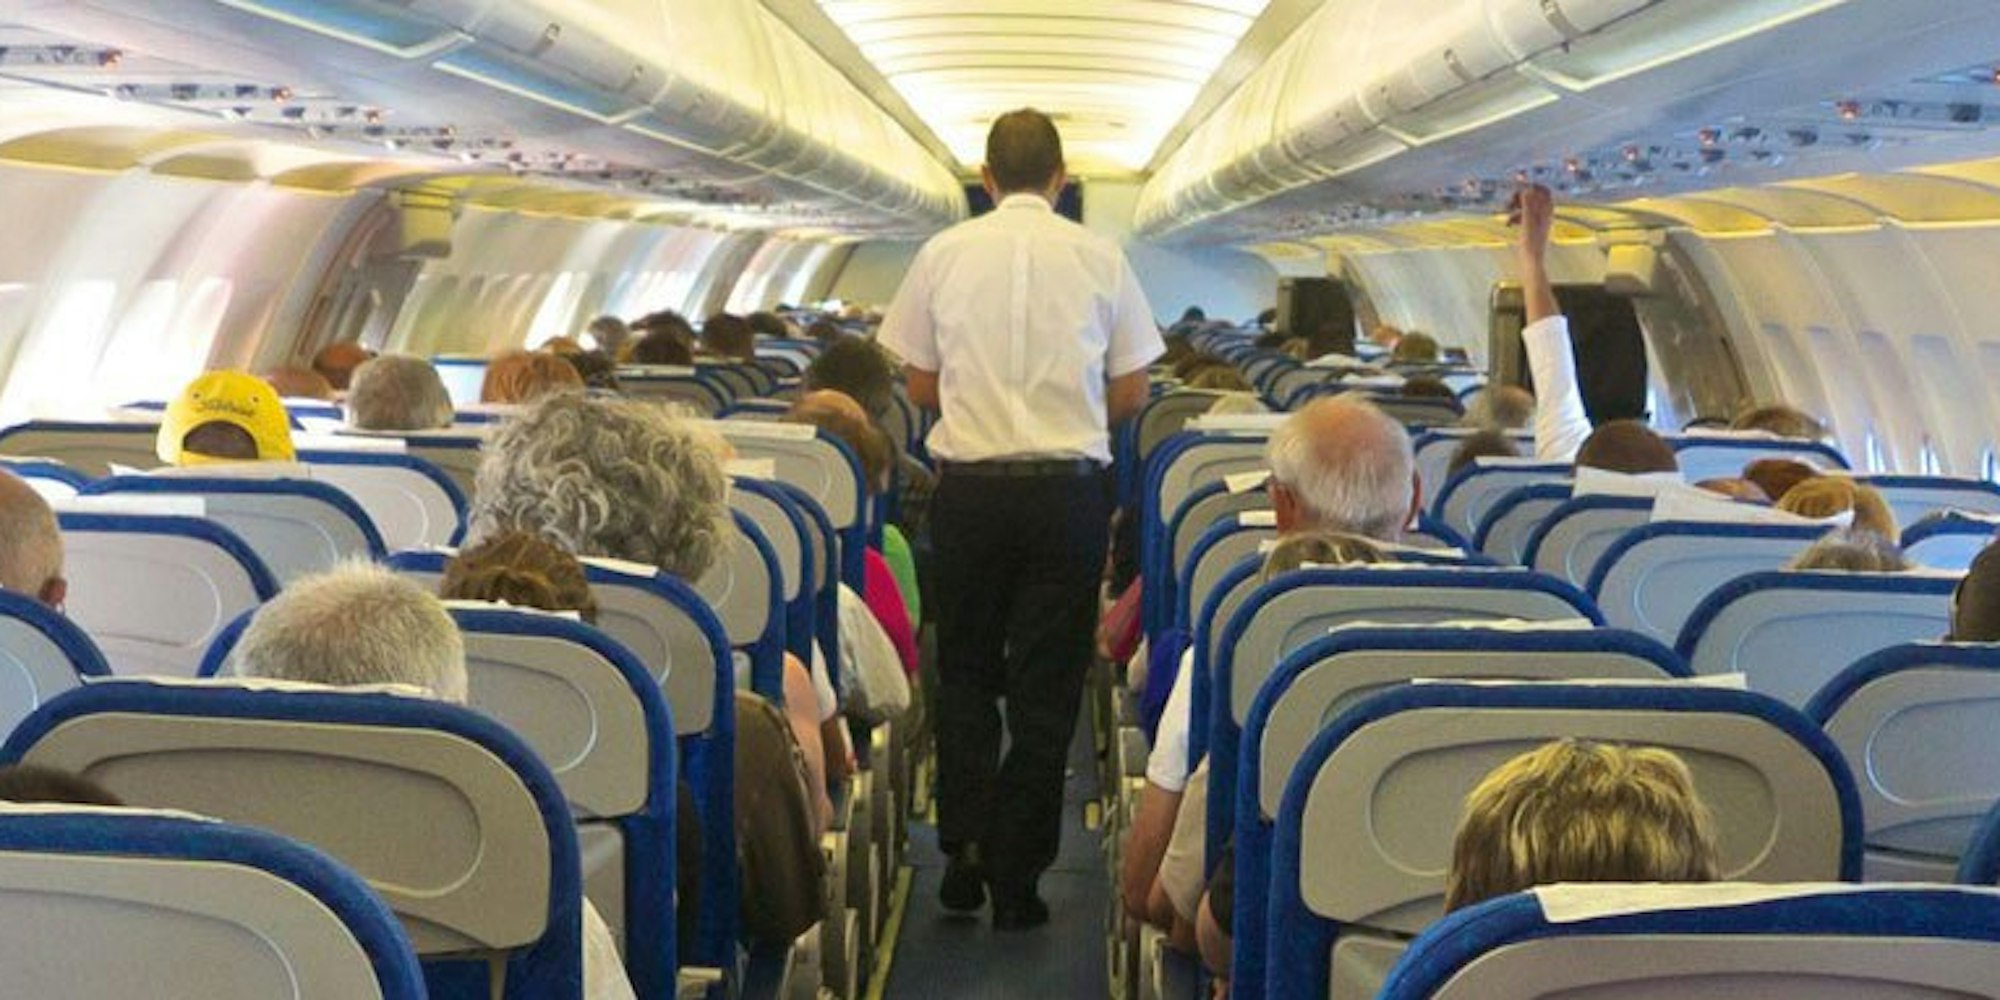 Nicht immer einfach: Im Flugzeug müssen es Passagiere mehrere Stunden auf engem Raum mit Fremden aushalten. (Symbolbild)